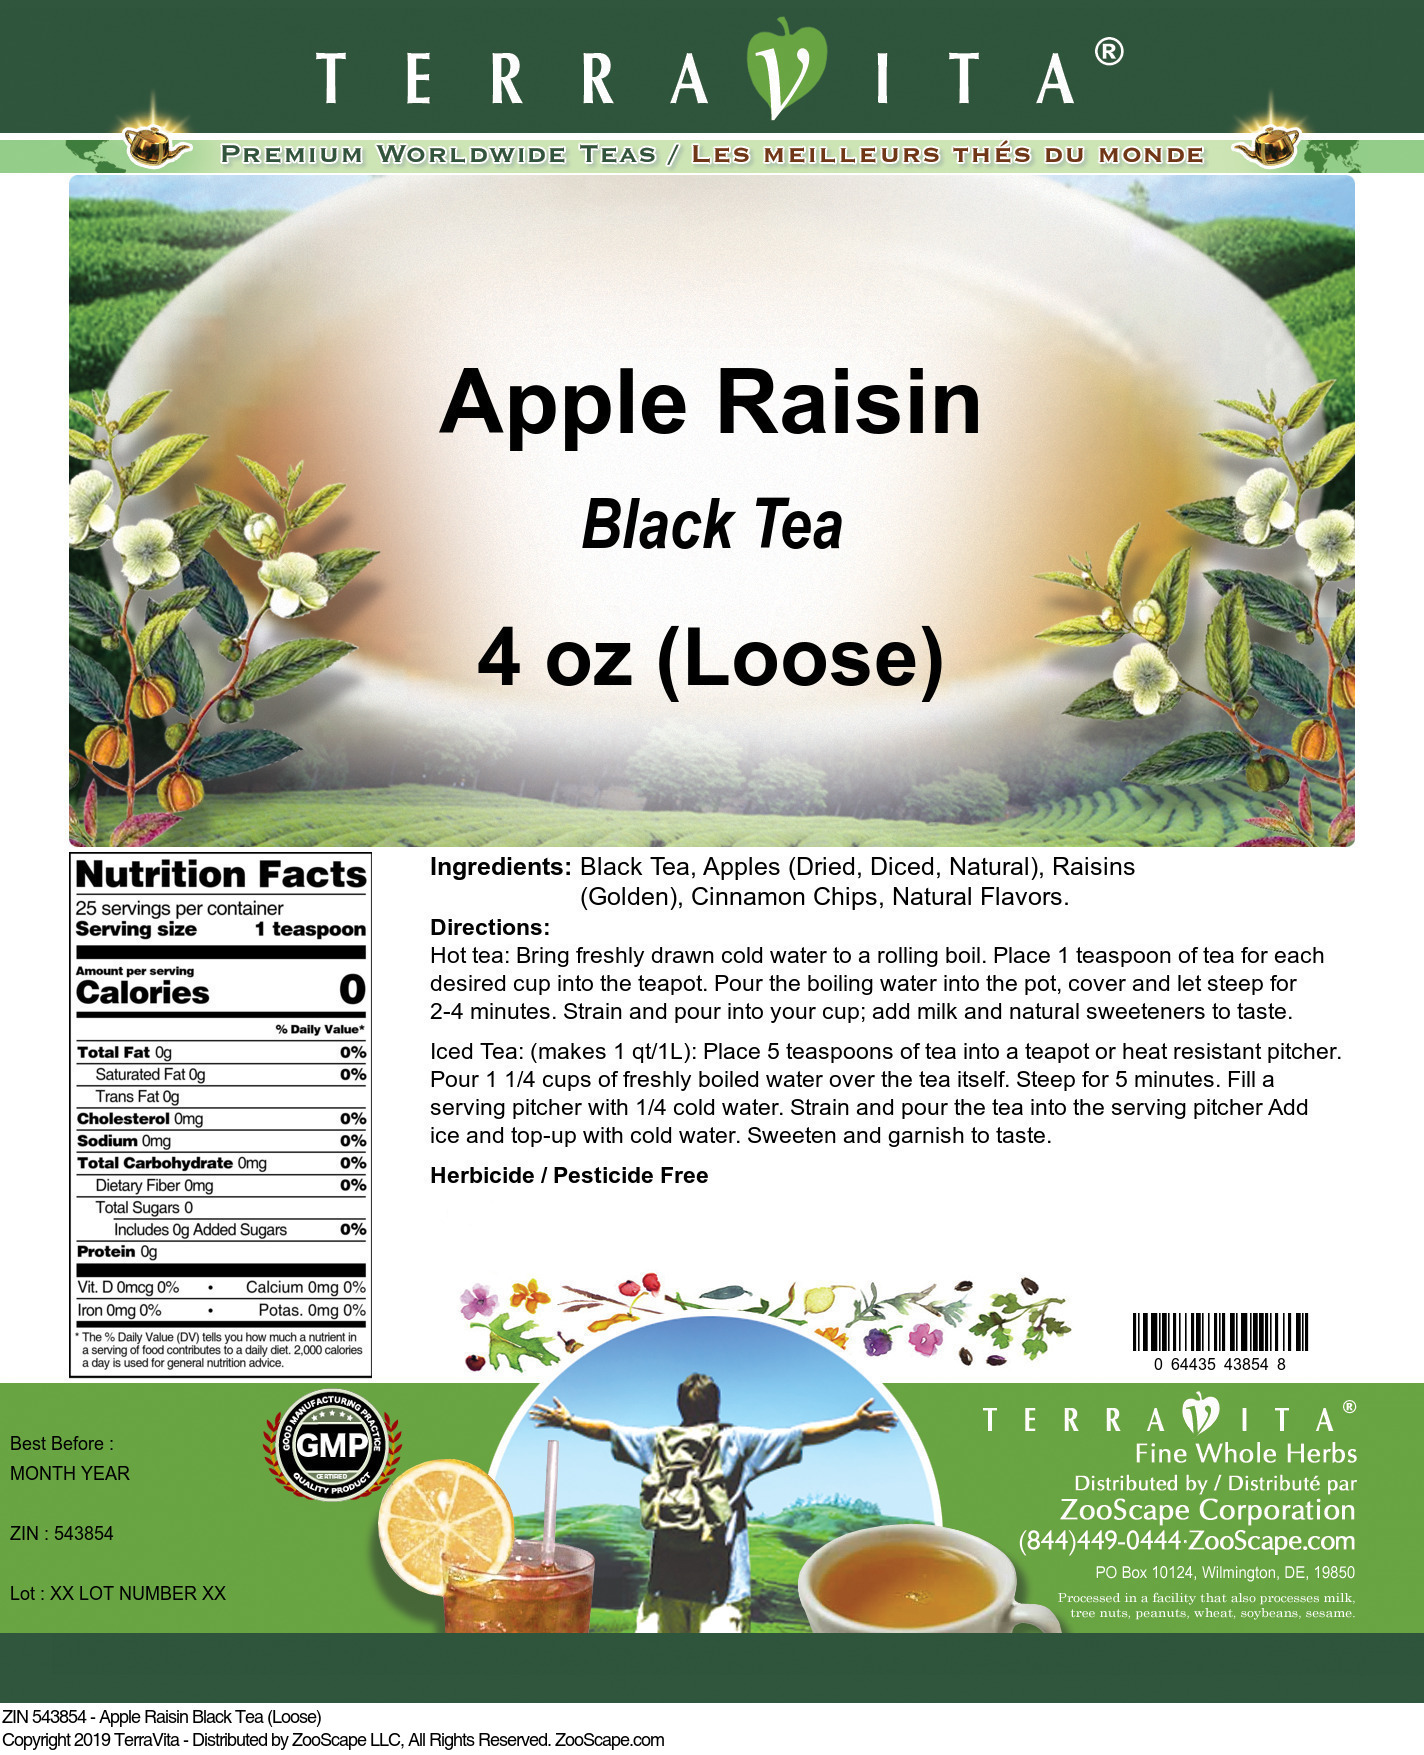 Apple Raisin Black Tea (Loose) - Label